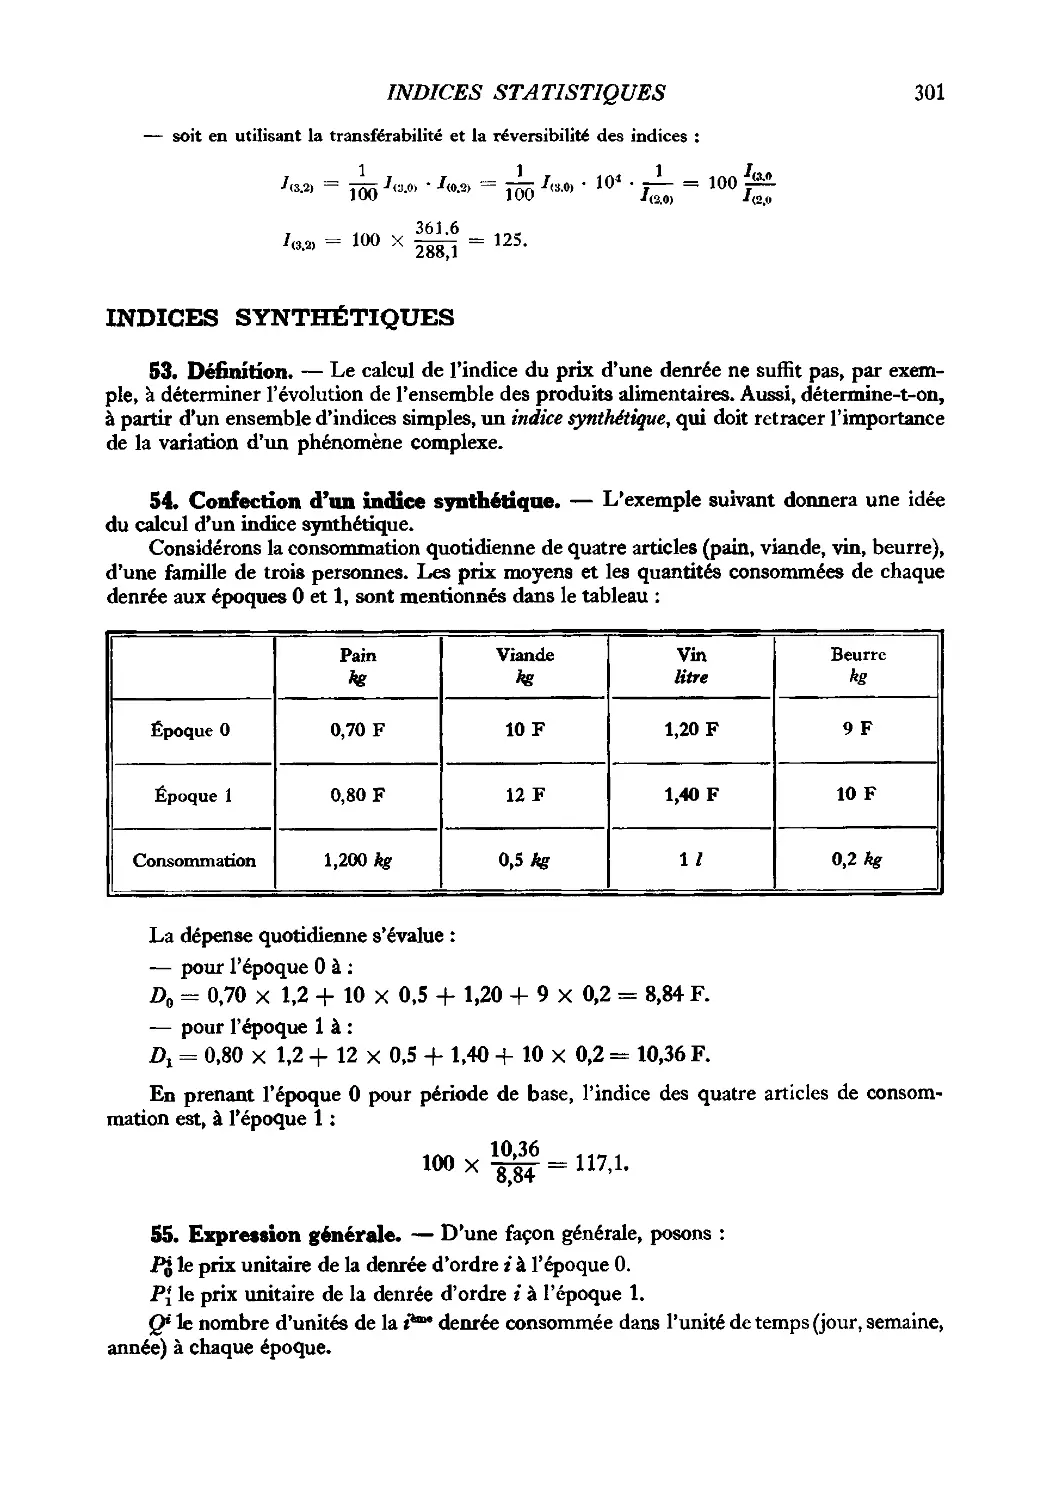 Indices synthétiques
54. Confection d’un indice synthétique
55. Expression générale